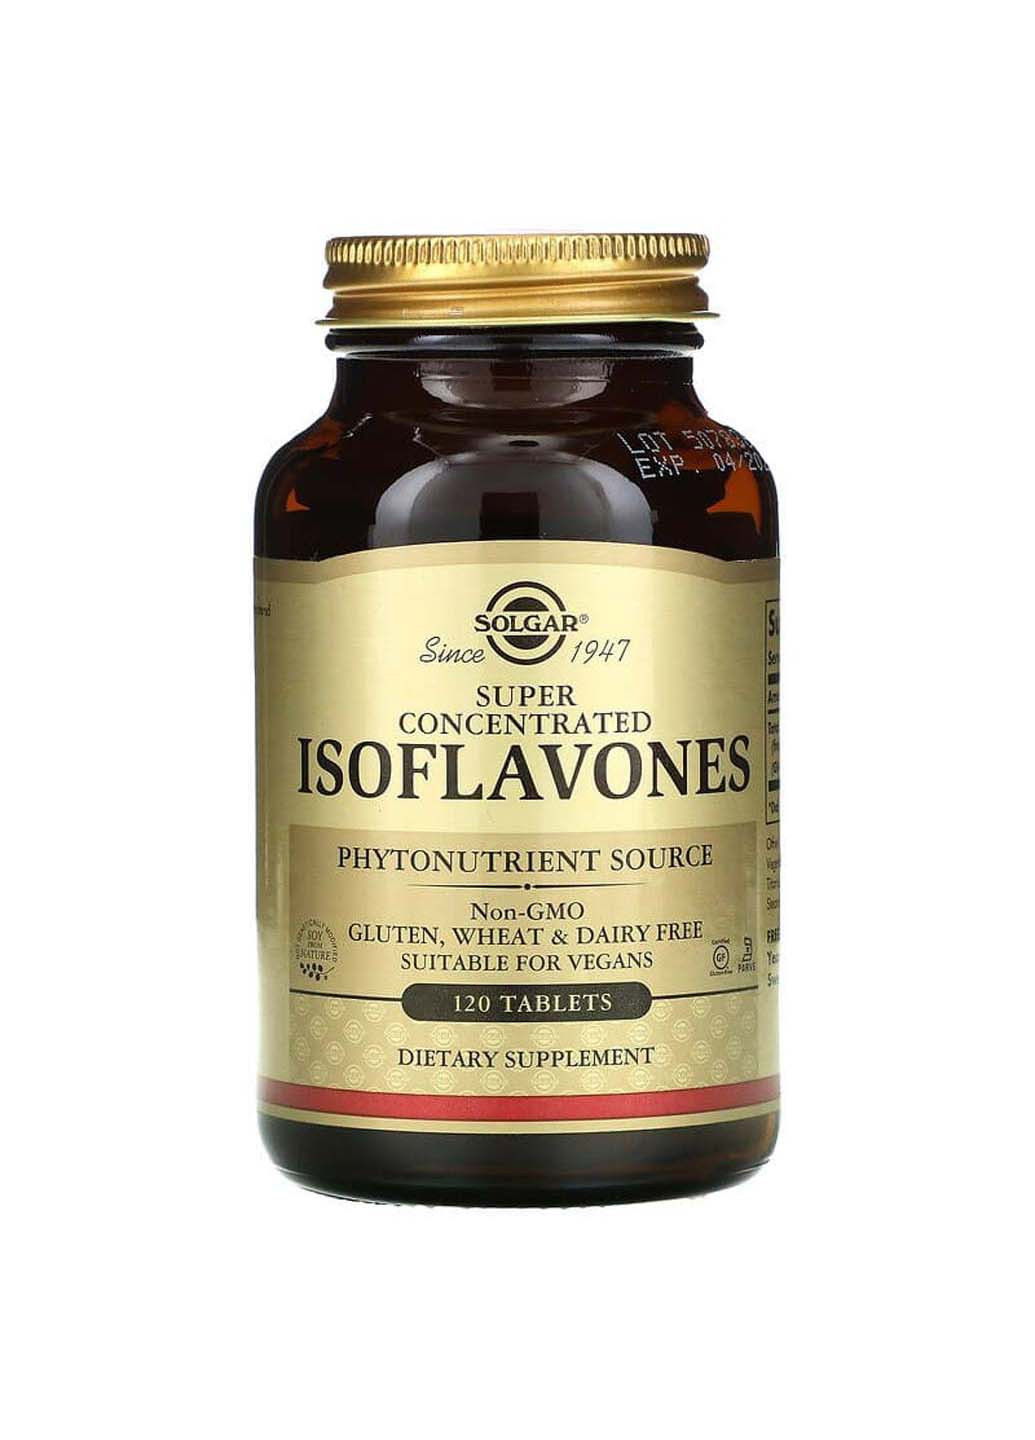 Соевые изофлавоны Isoflavones суперконцентрированные 120 таблеток Solgar (256931202)